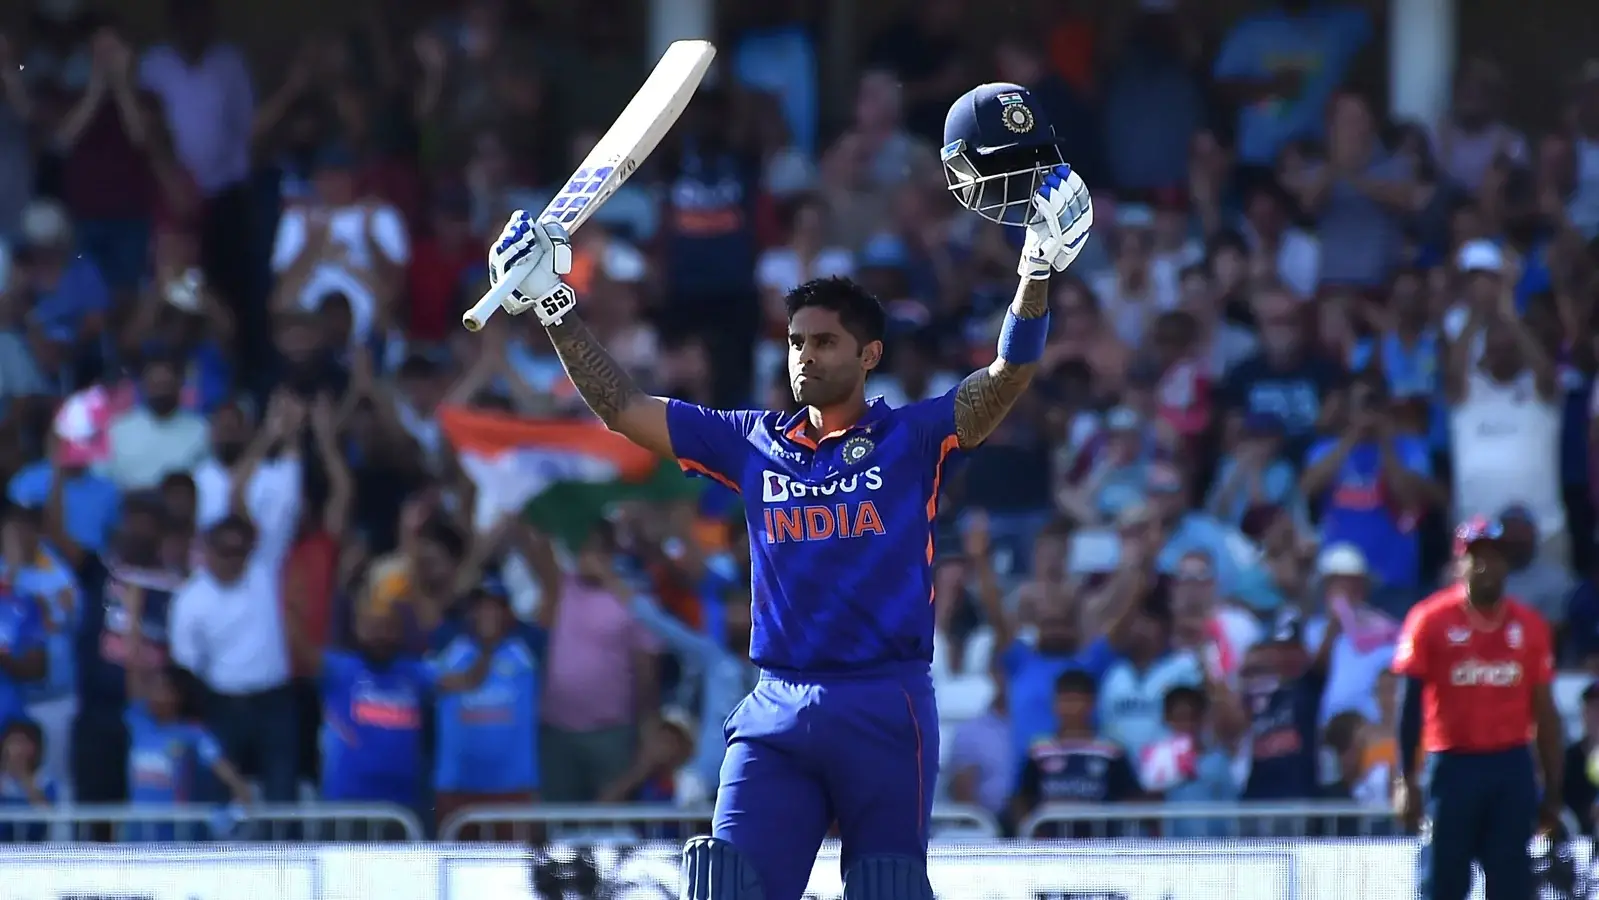  सूर्यकुमार अविश्वसनीय टन के बाद विशाल T20I उपलब्धि हासिल करने वाले दूसरे भारतीय बने |  क्रिकेट
